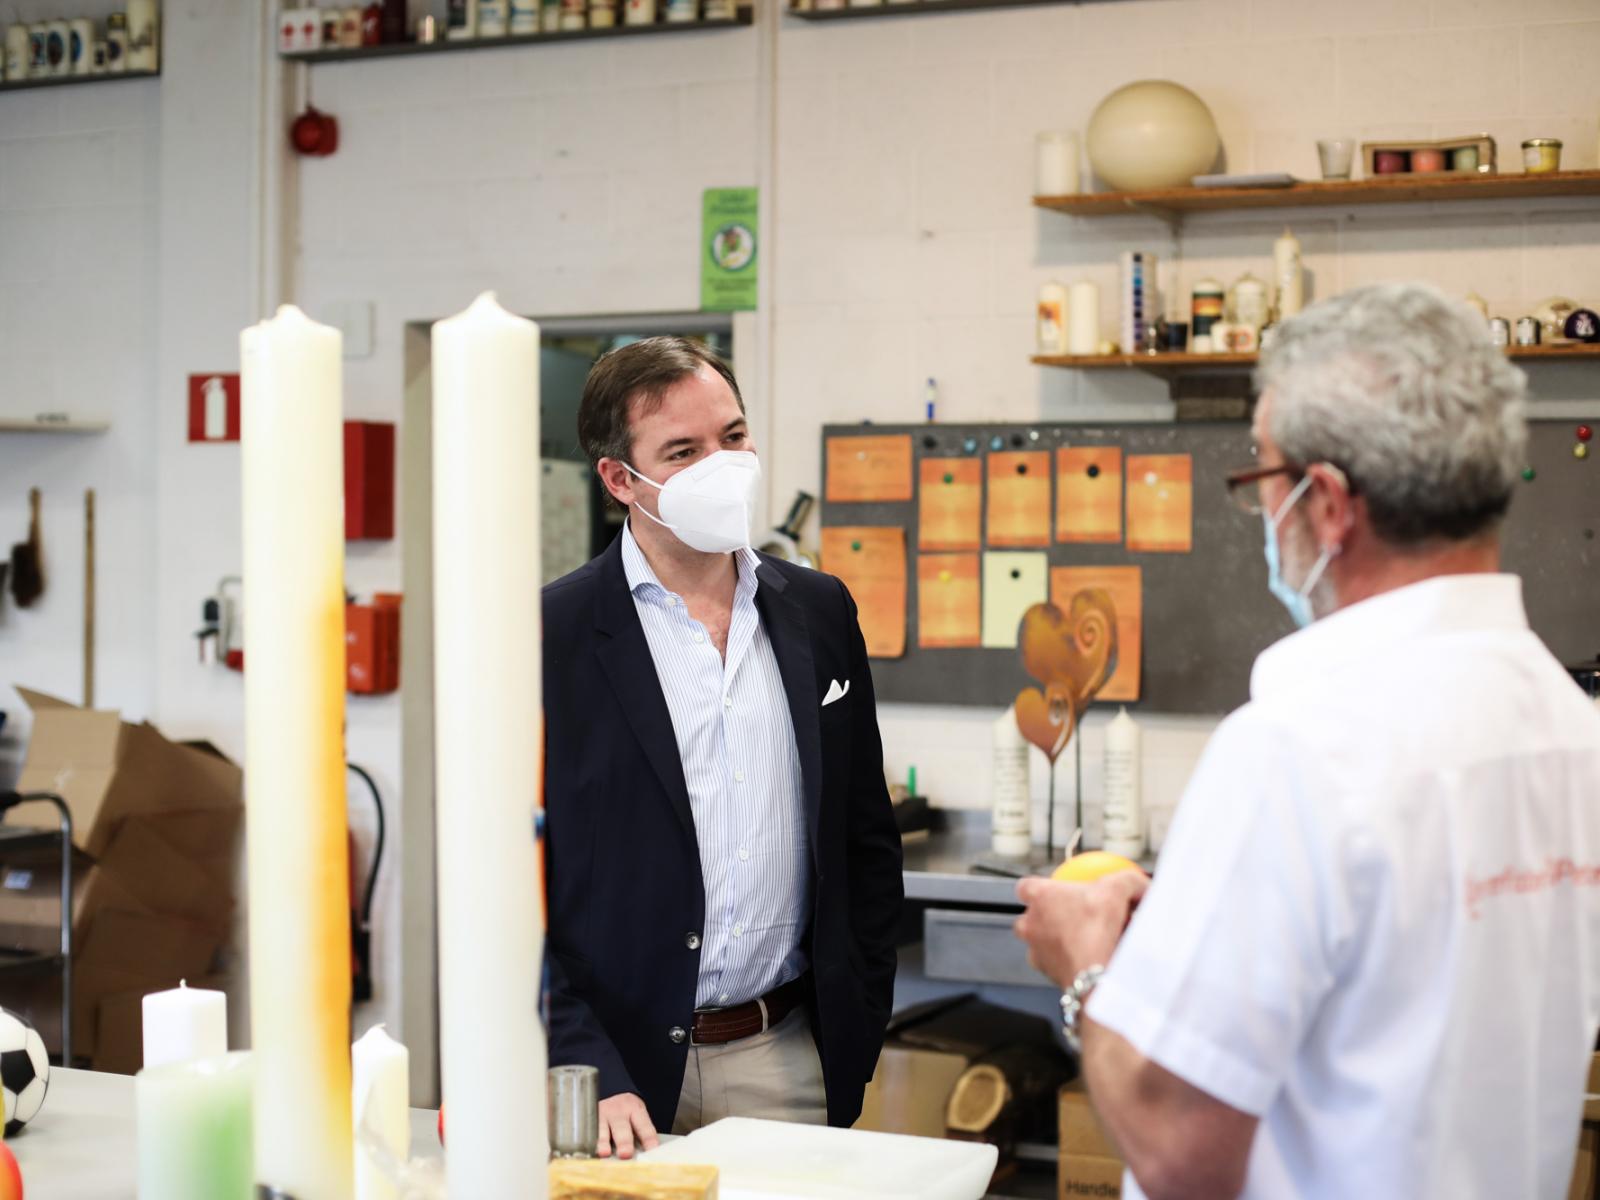 Le Prince héritier a visité la fabrique de bougies "Käerzefabrik" 